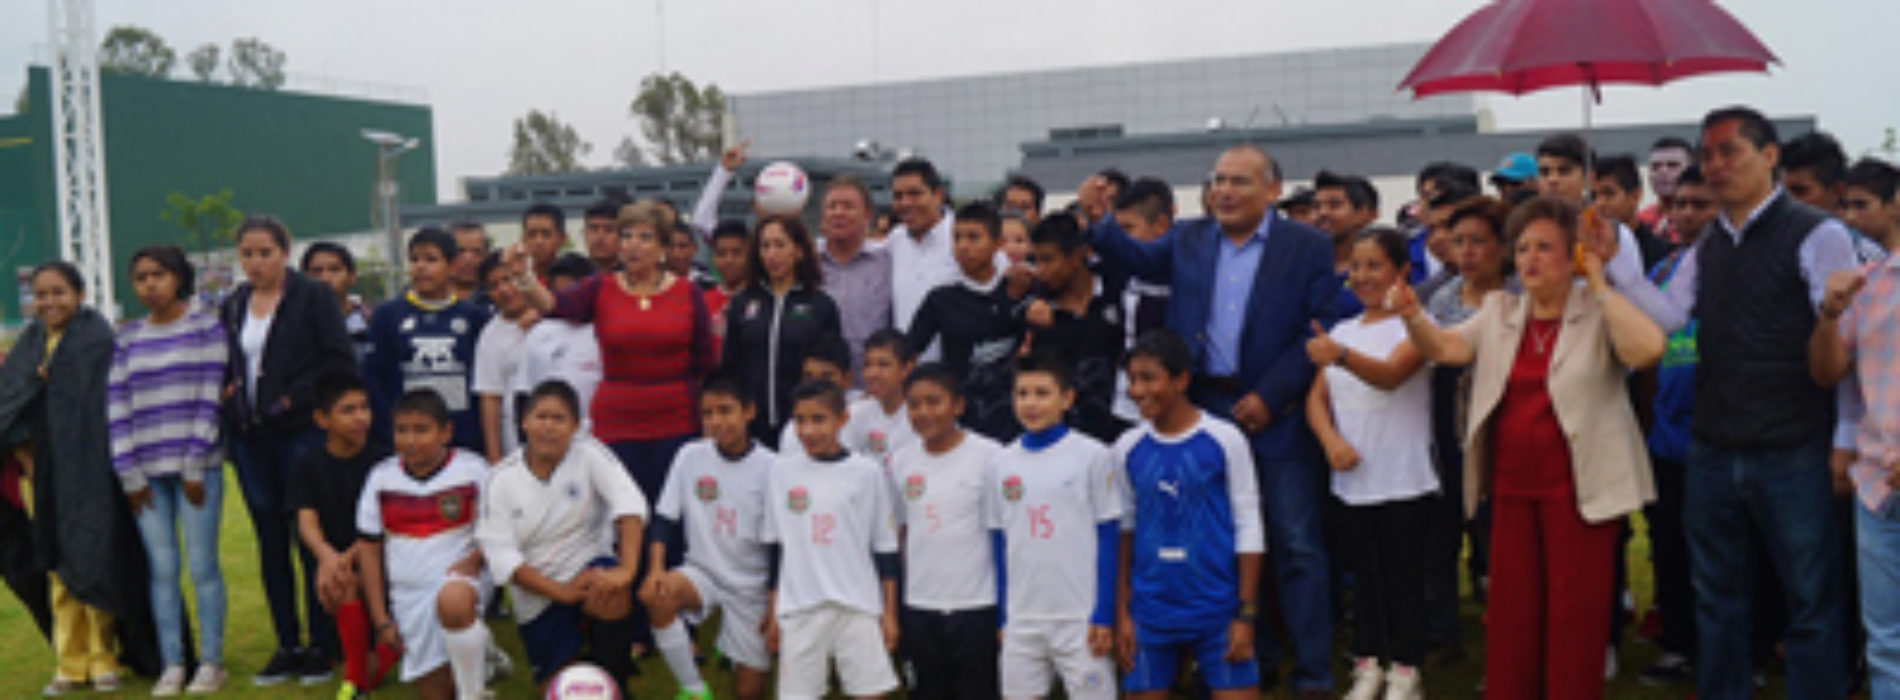 Gobierno pone en marcha programa “Fútbol por la inclusión” en Oaxaca